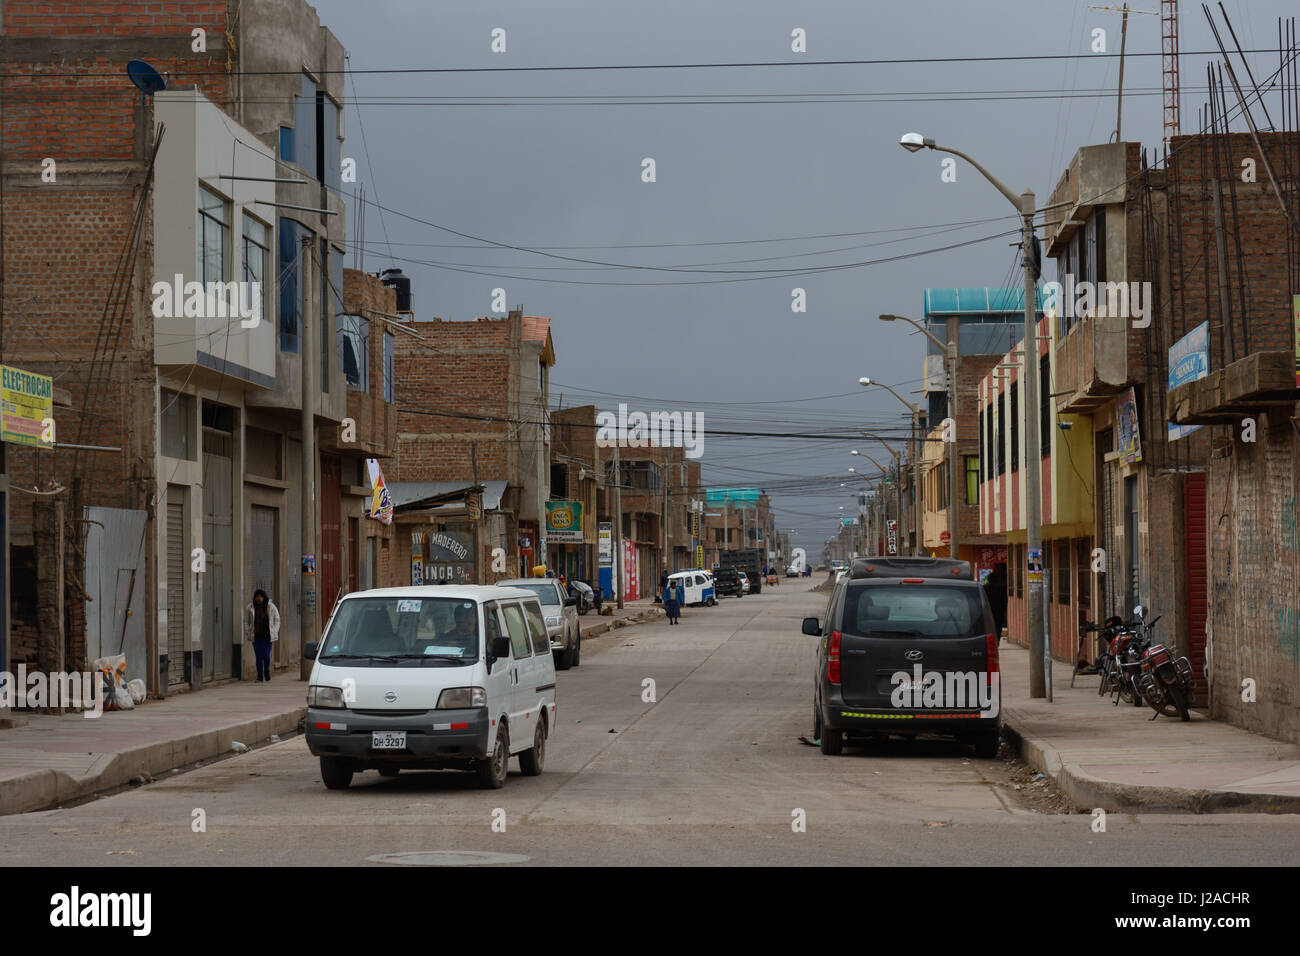 Perú, Puno, Juliaca, Juliaca es una ciudad próspera, cerca del Lago Titicaca Foto de stock